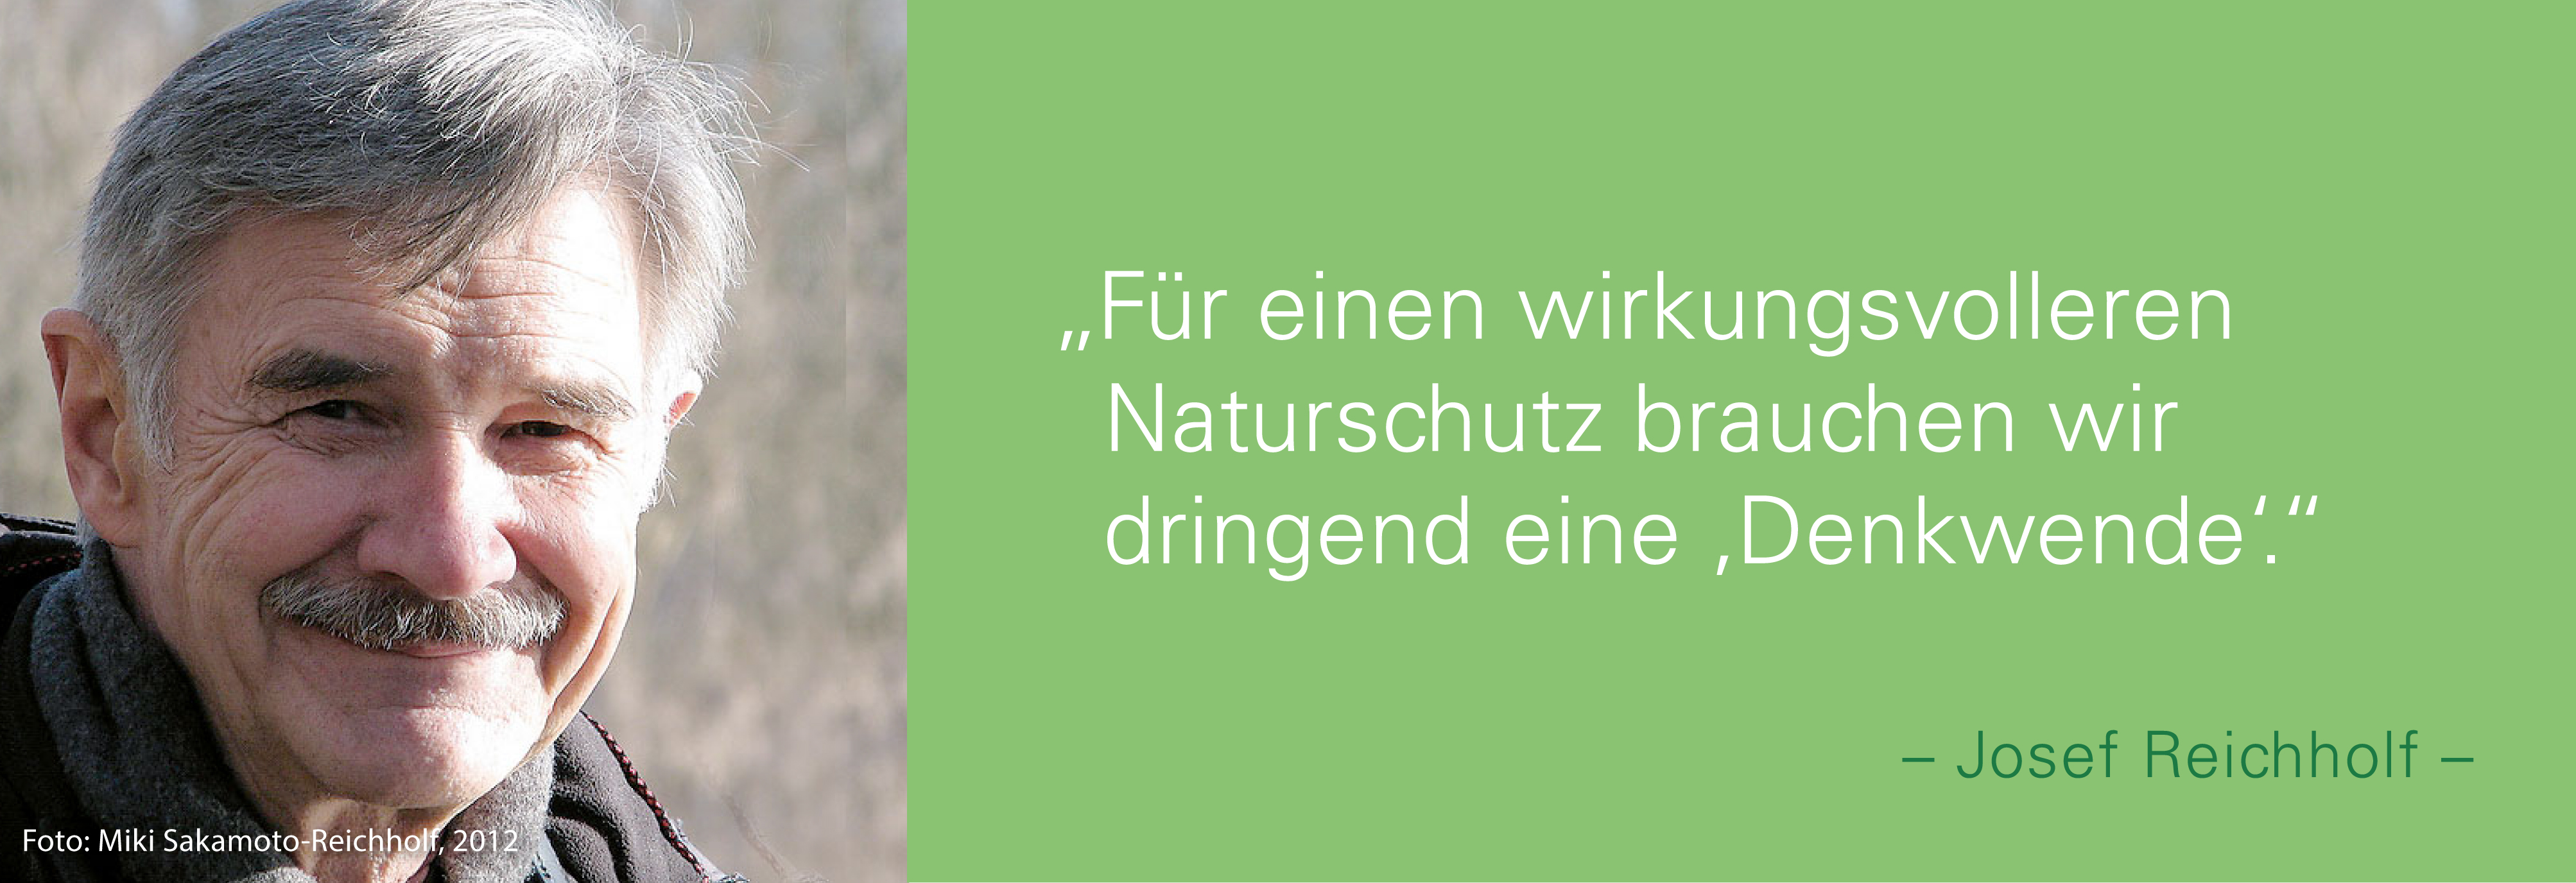 Portraitfoto von Josef Reichholf mit seinem Zitat Für einen wirkungsvolleren Naturschutz brauchen wir dringend eine Denkwende. 